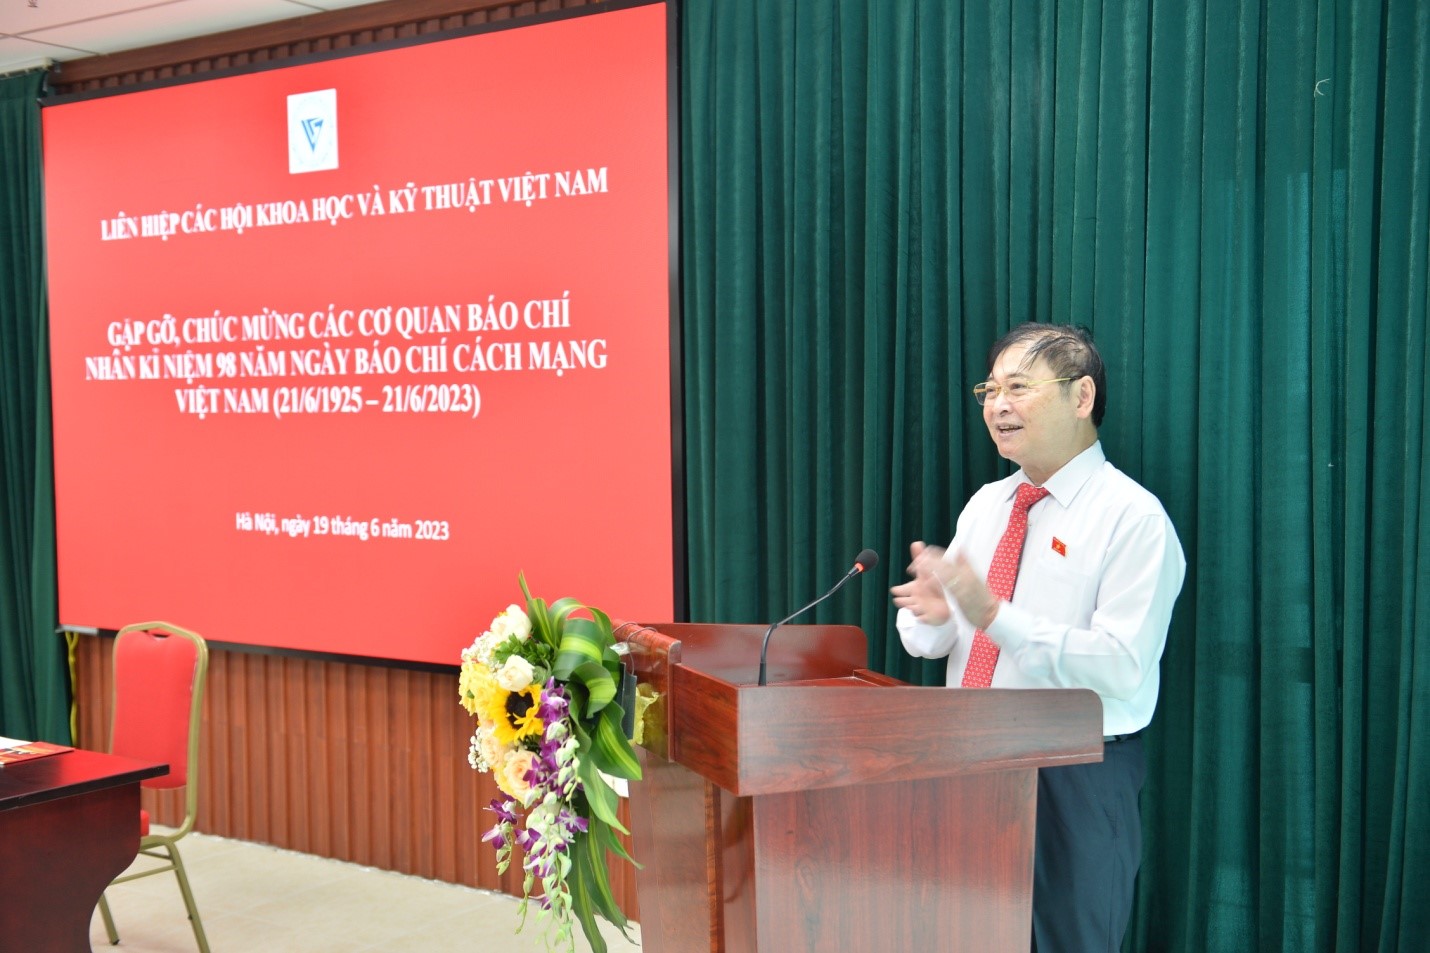 Chủ tịch Liên hiệp Hội Việt Nam Phan Xuân Dũng phát biểu tại buổi gặp gỡ báo chí